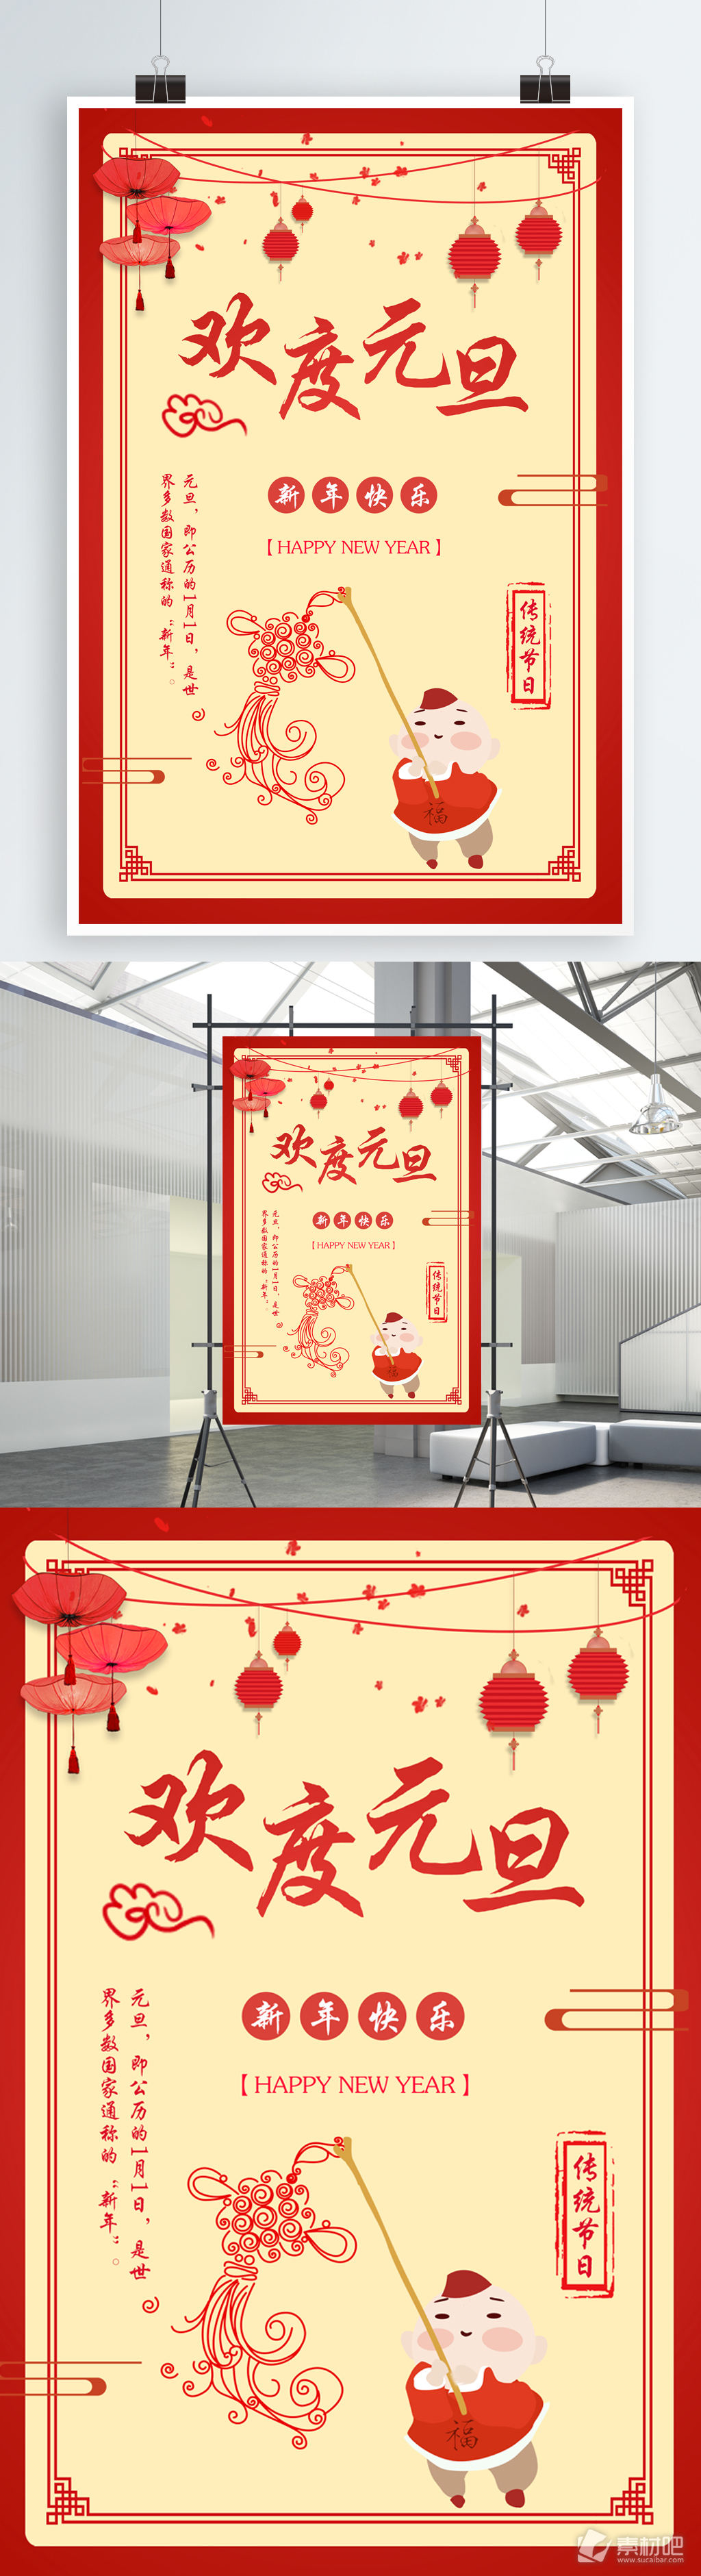 欢度元旦新年快乐红灯笼中国结节日海报